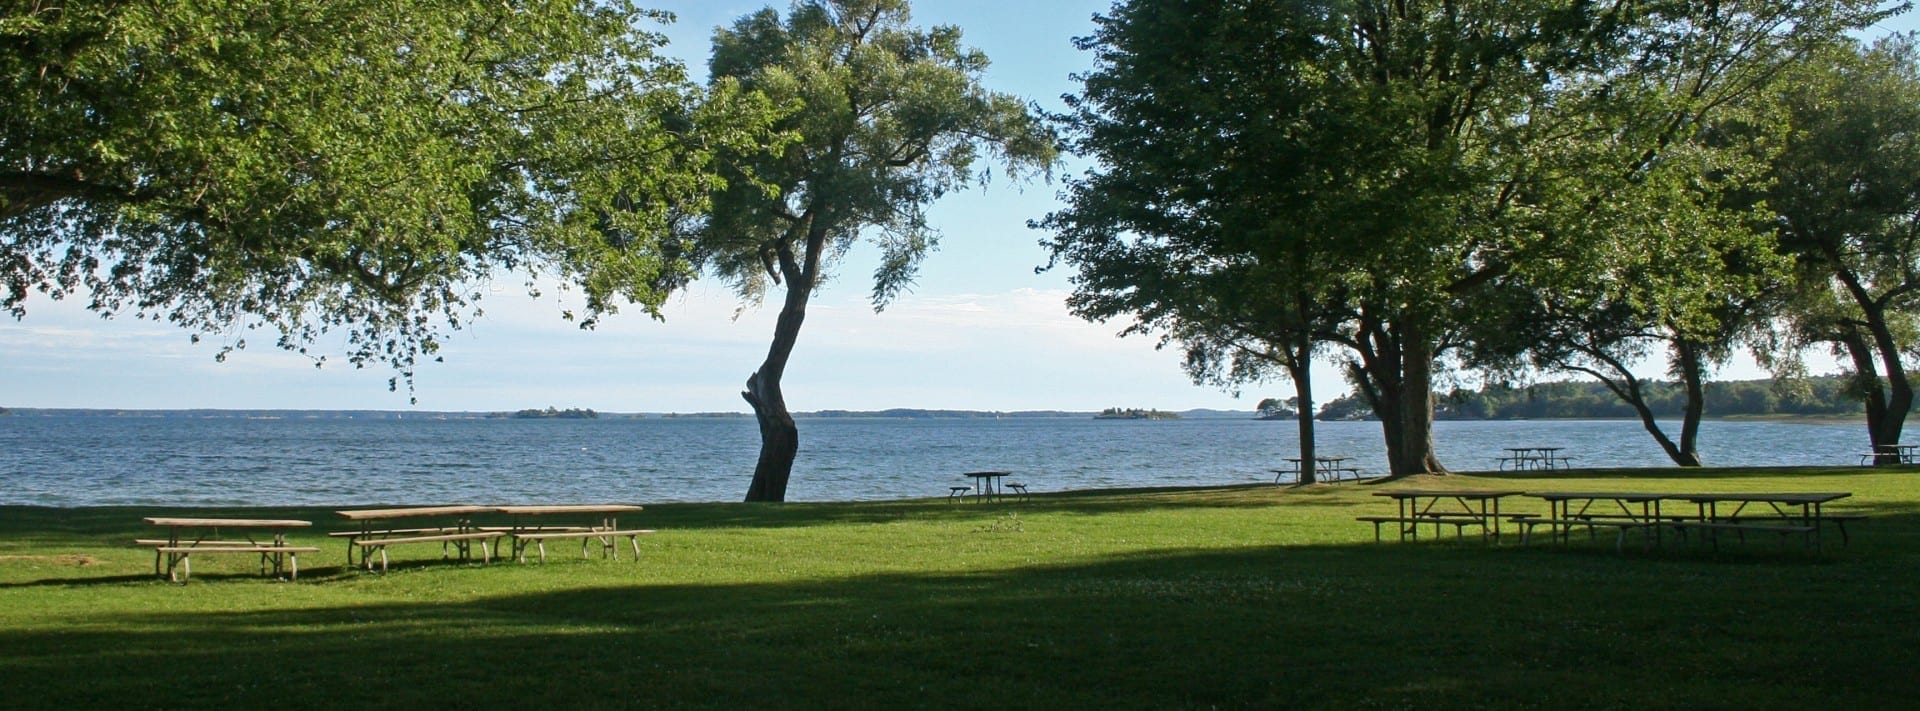 Vista de la costa desde la bahía de Brown situada en frente del municipio de Yonge. Thousand Islands Canadá